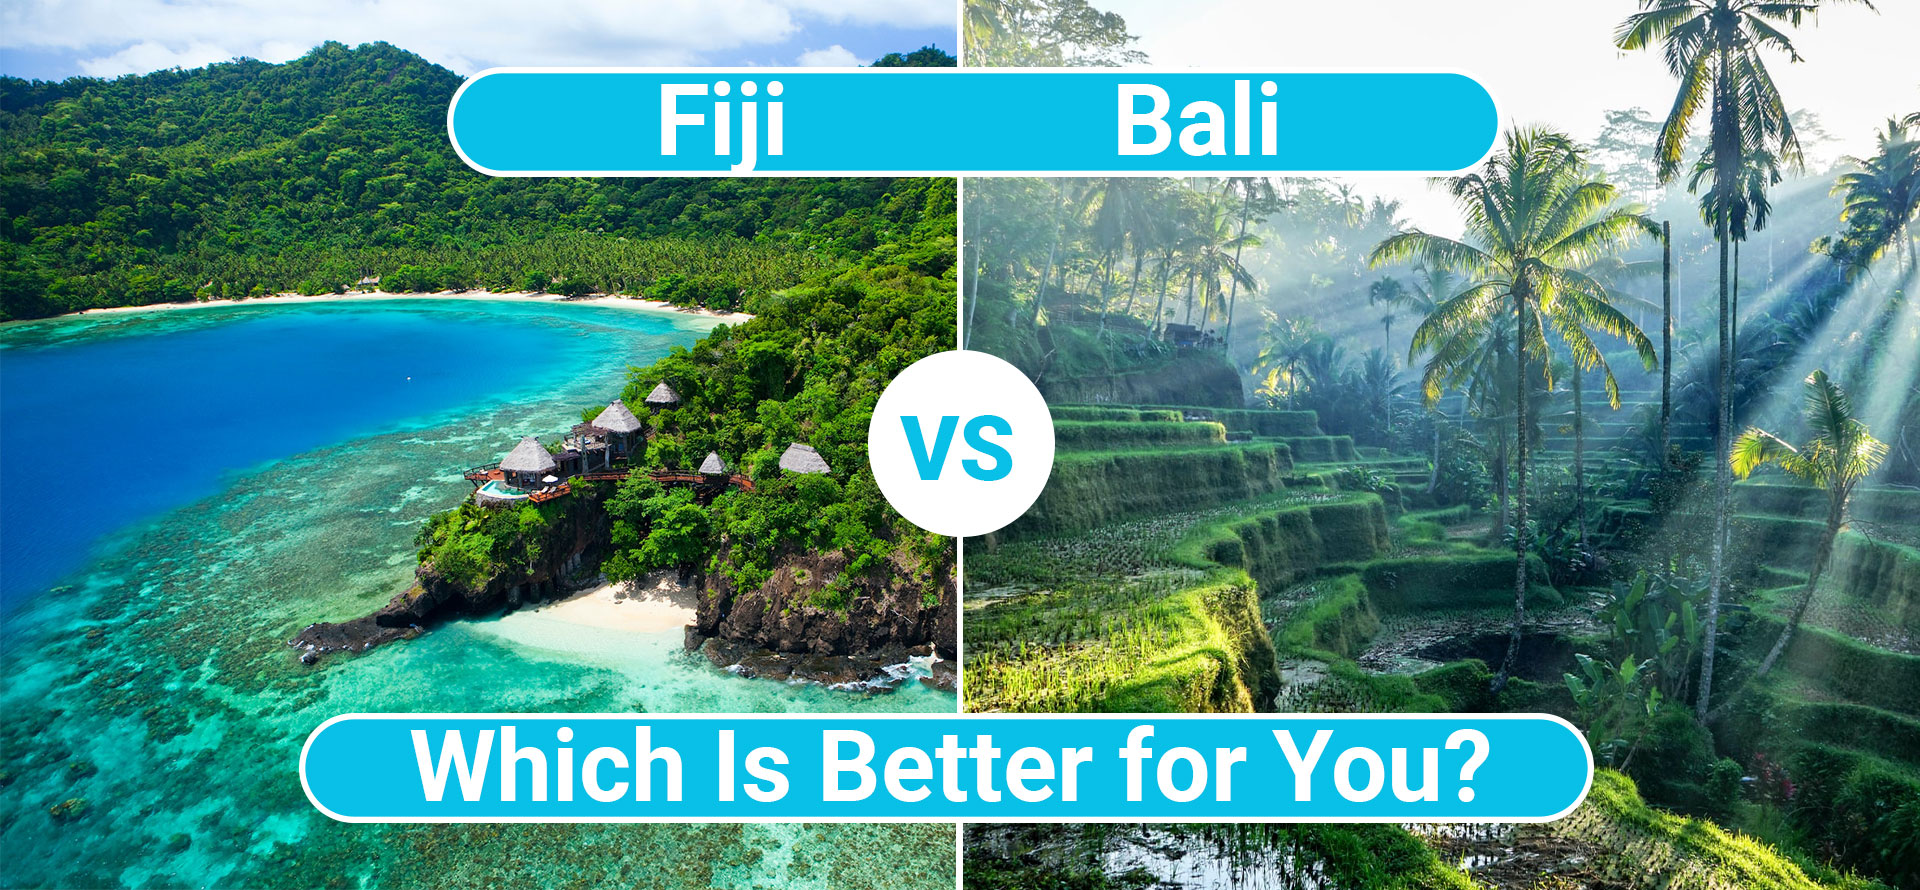 Fiji vs bali.